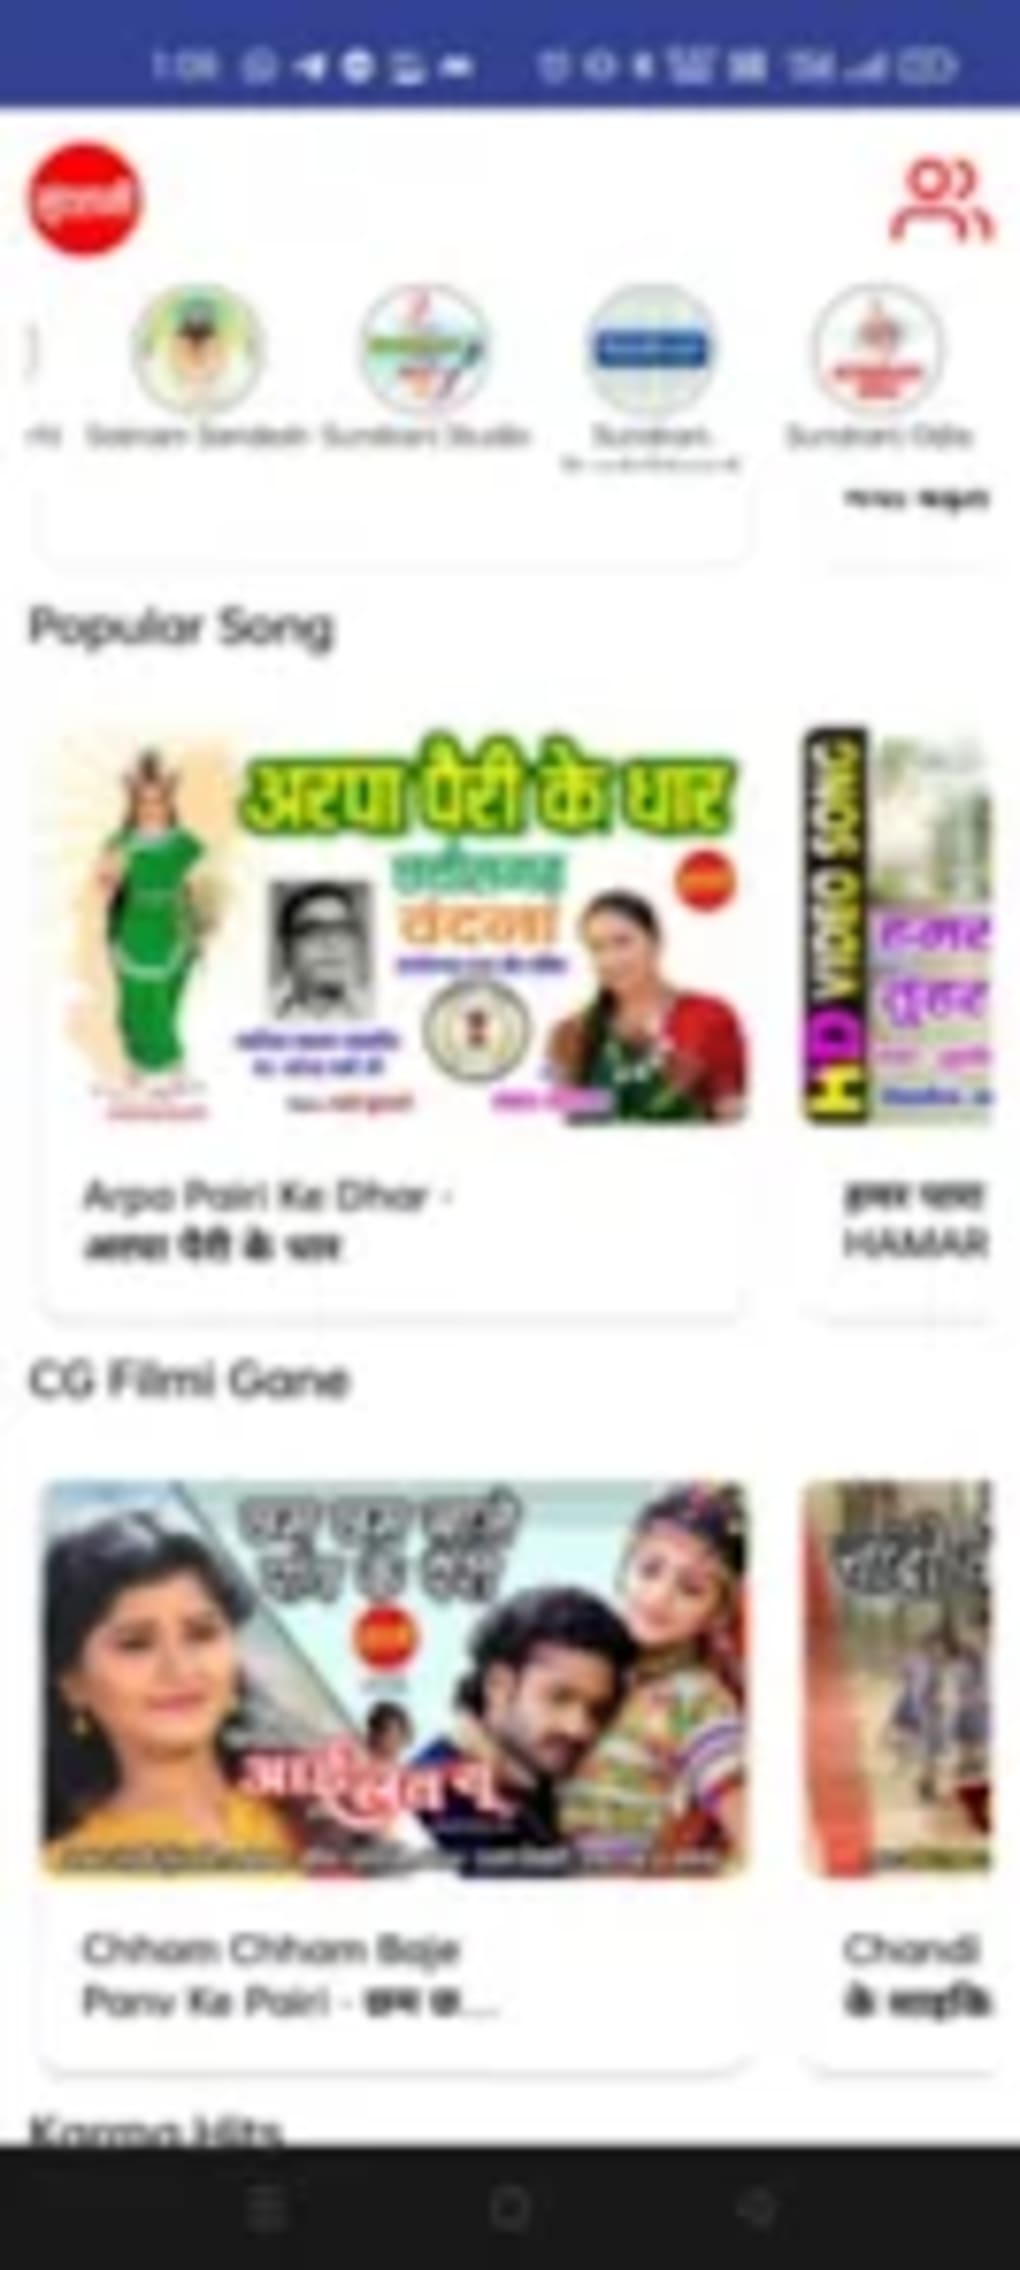 cg song status cg status video cg whatsapp status #cg song status cg status  video cg whatsapp status #❣️ chhattisgarhi❣️ CG.💞 love💞 video ❣️ status_  ❣️song❣️ 🌾हमर सुंदर छत्तीसगढ़ 🌾❣️ #Chhattisgarhi status